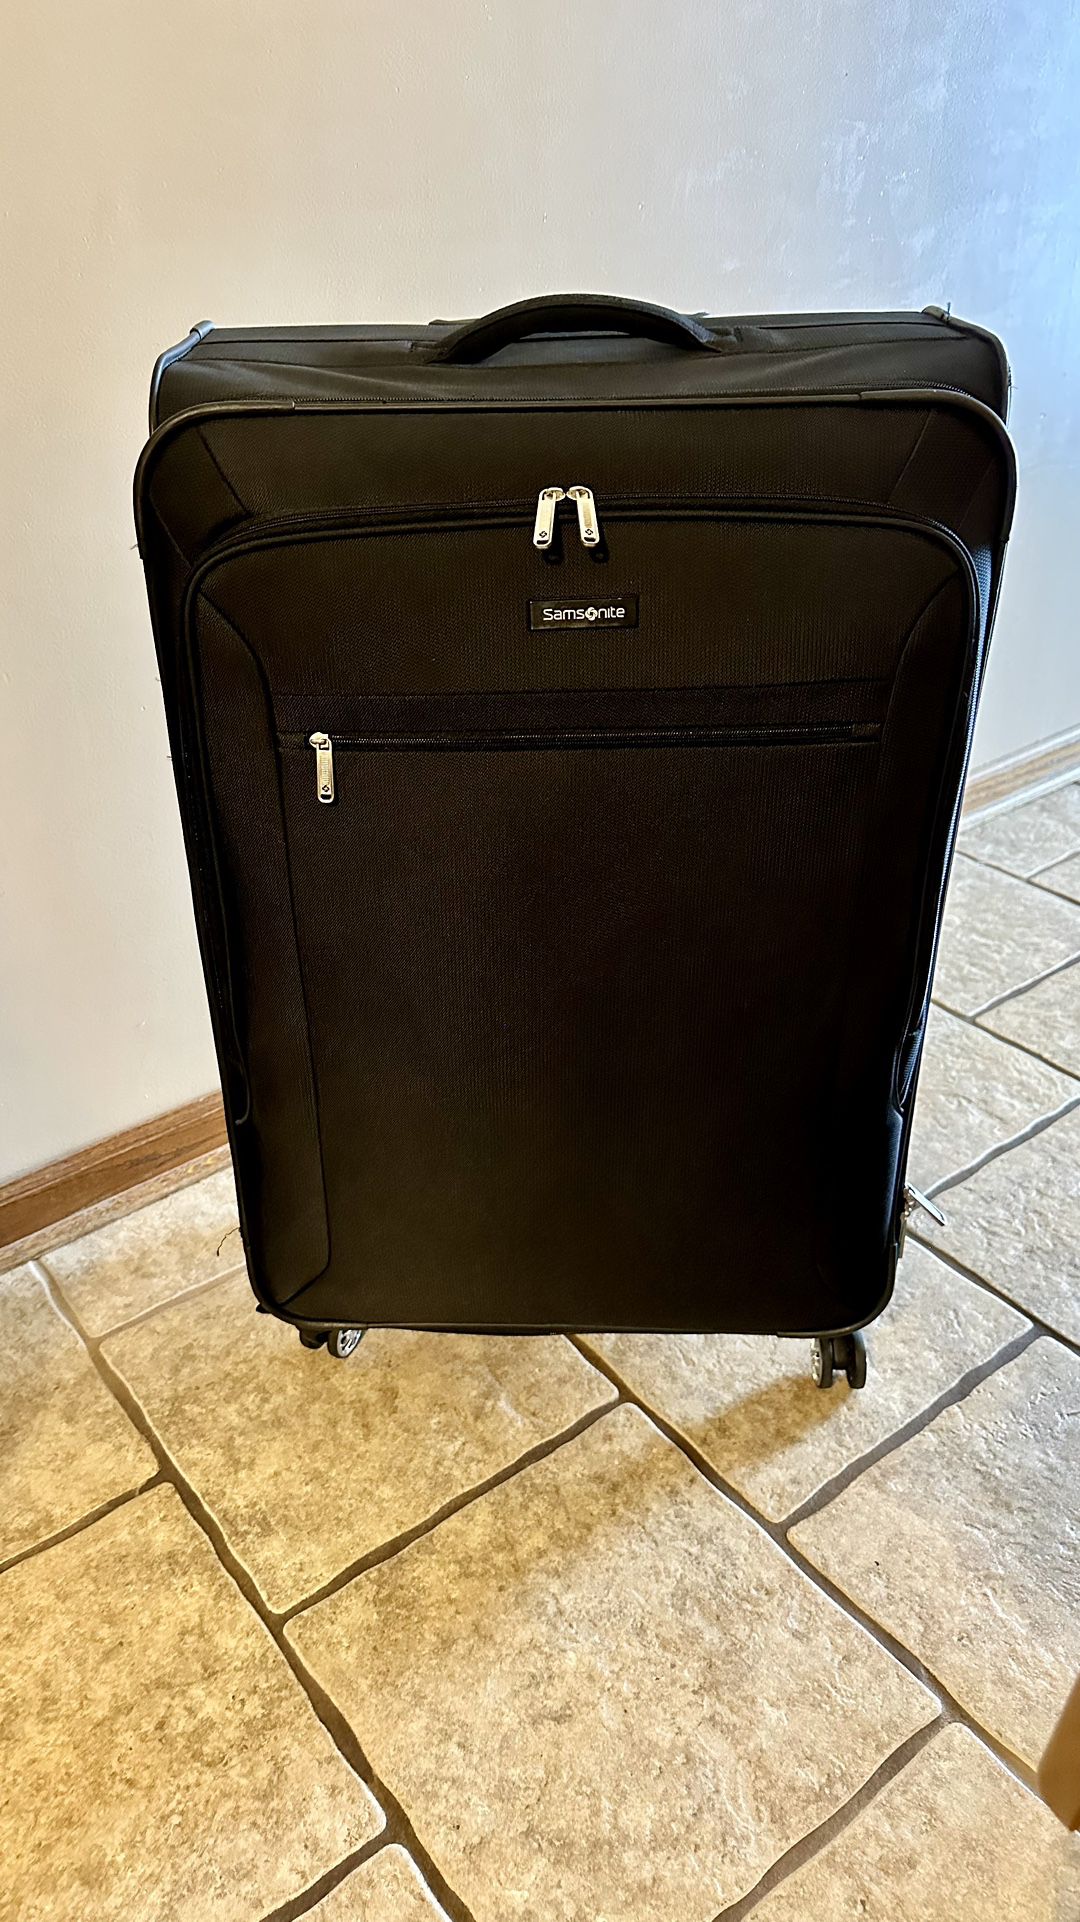 Samsonite 29” Luggage / Suitcase